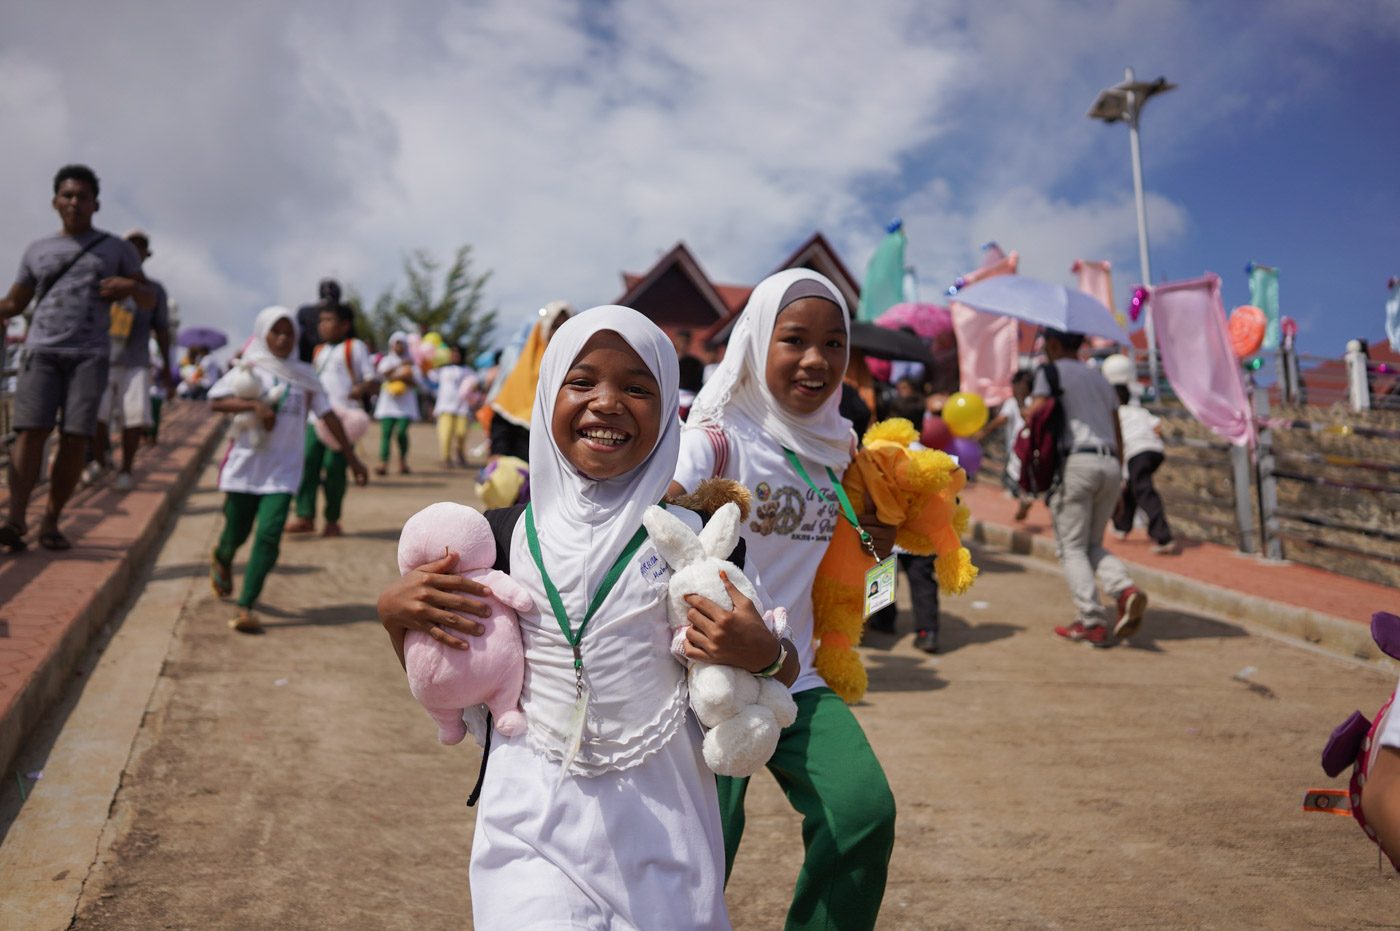 IN PHOTOS: Children of Basilan celebrate healing